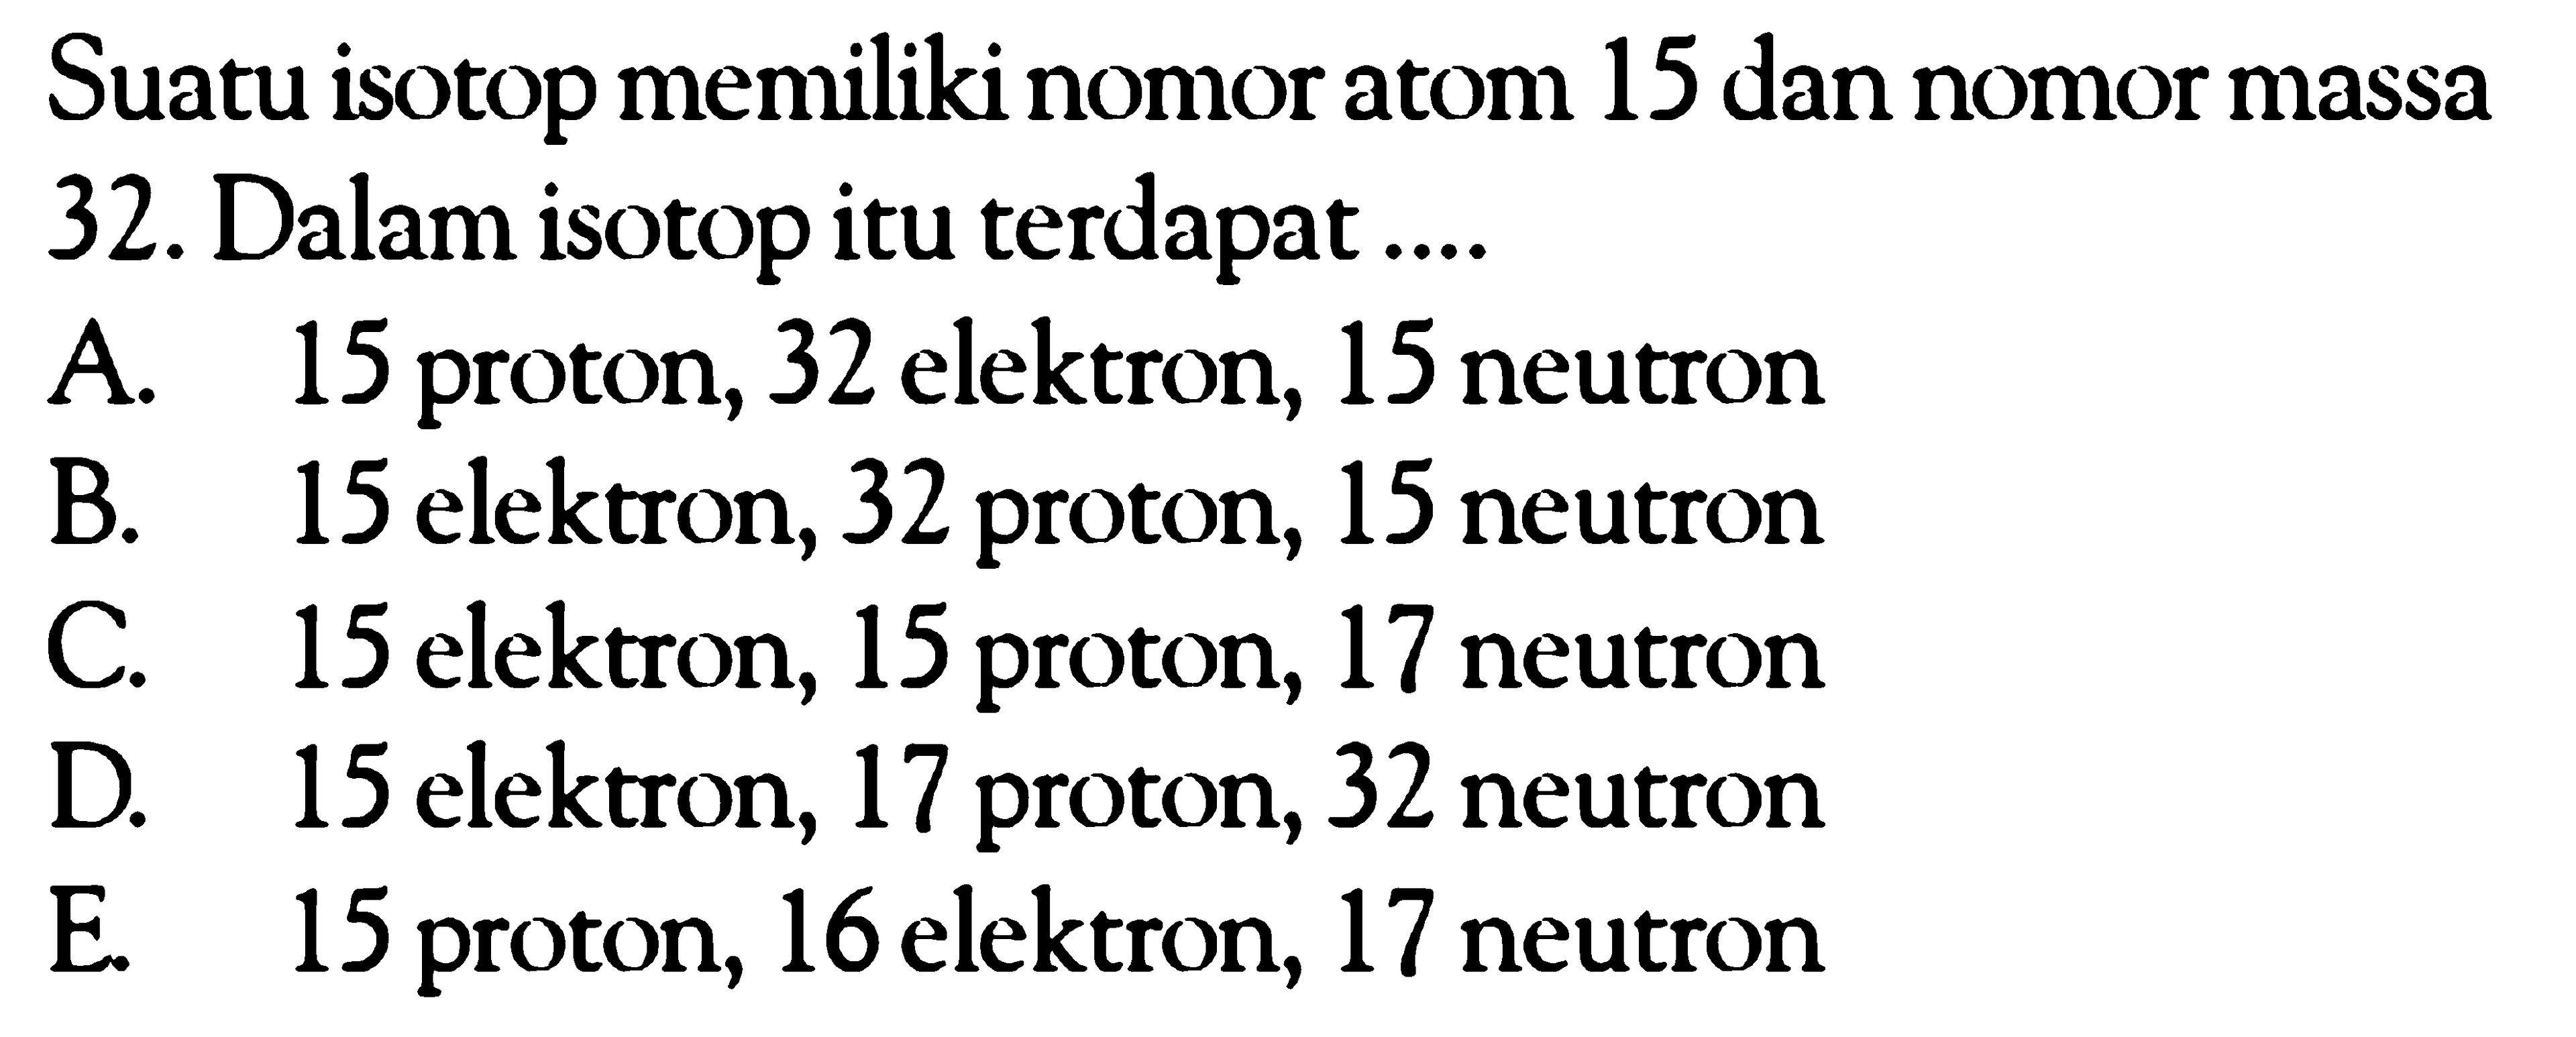 Suatu isotop memiliki nomor atom 15 dan nomor massa 32. Dalam isotop itu terdapat ....